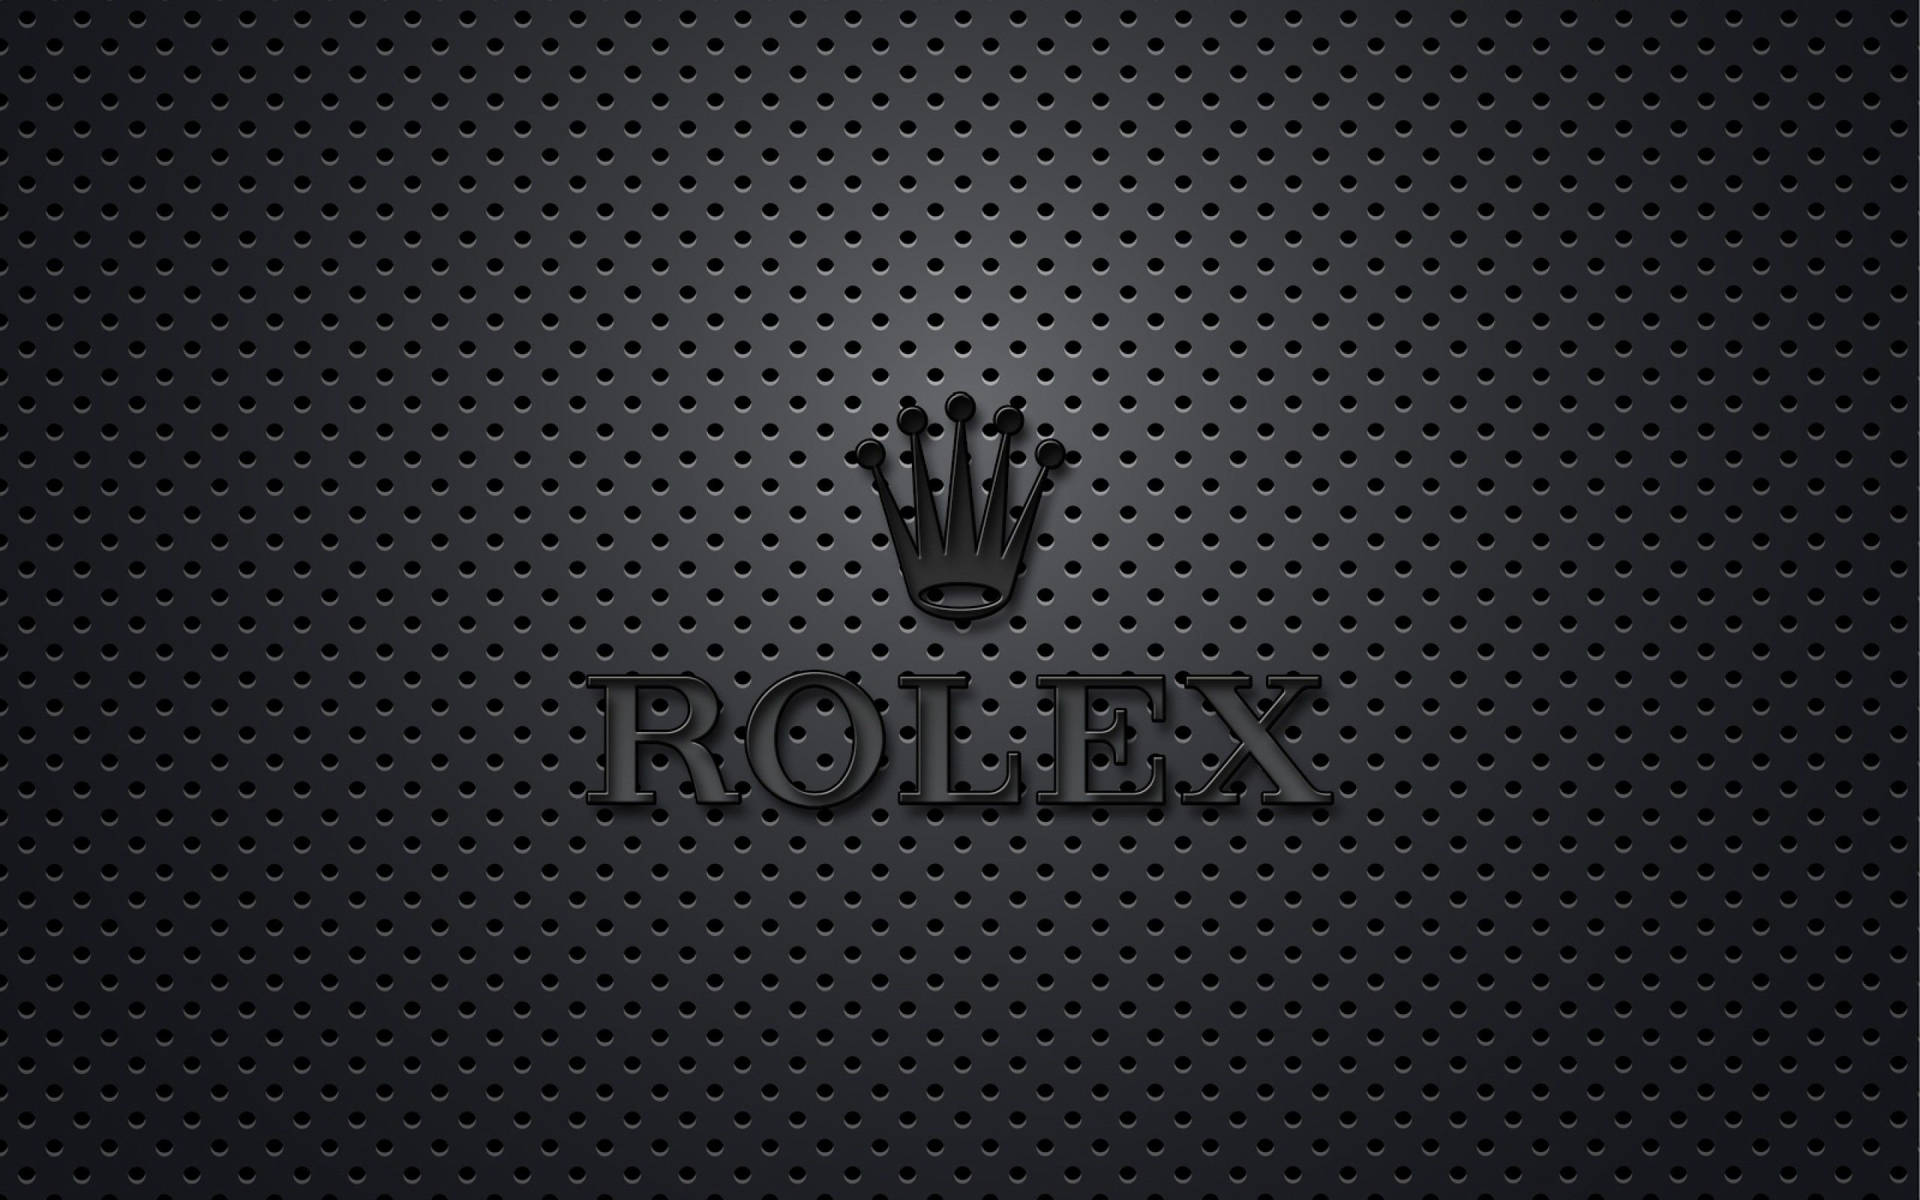 Mattesschwarzes Rolex-logo Wallpaper